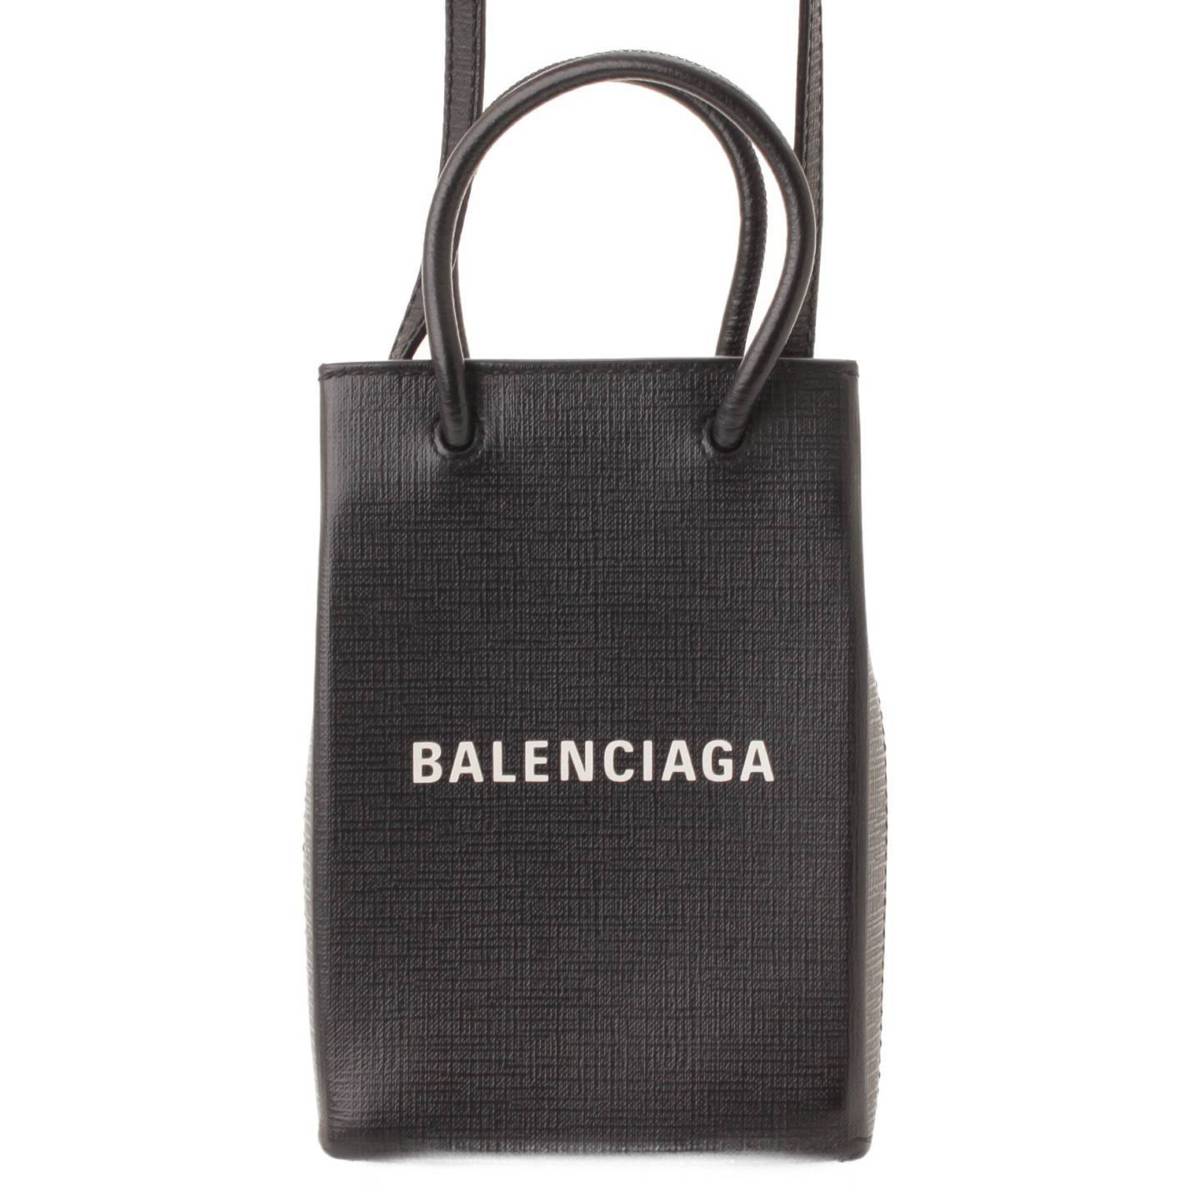 バレンシアガ(Balenciaga) ショッピングフォンホルダー レザー